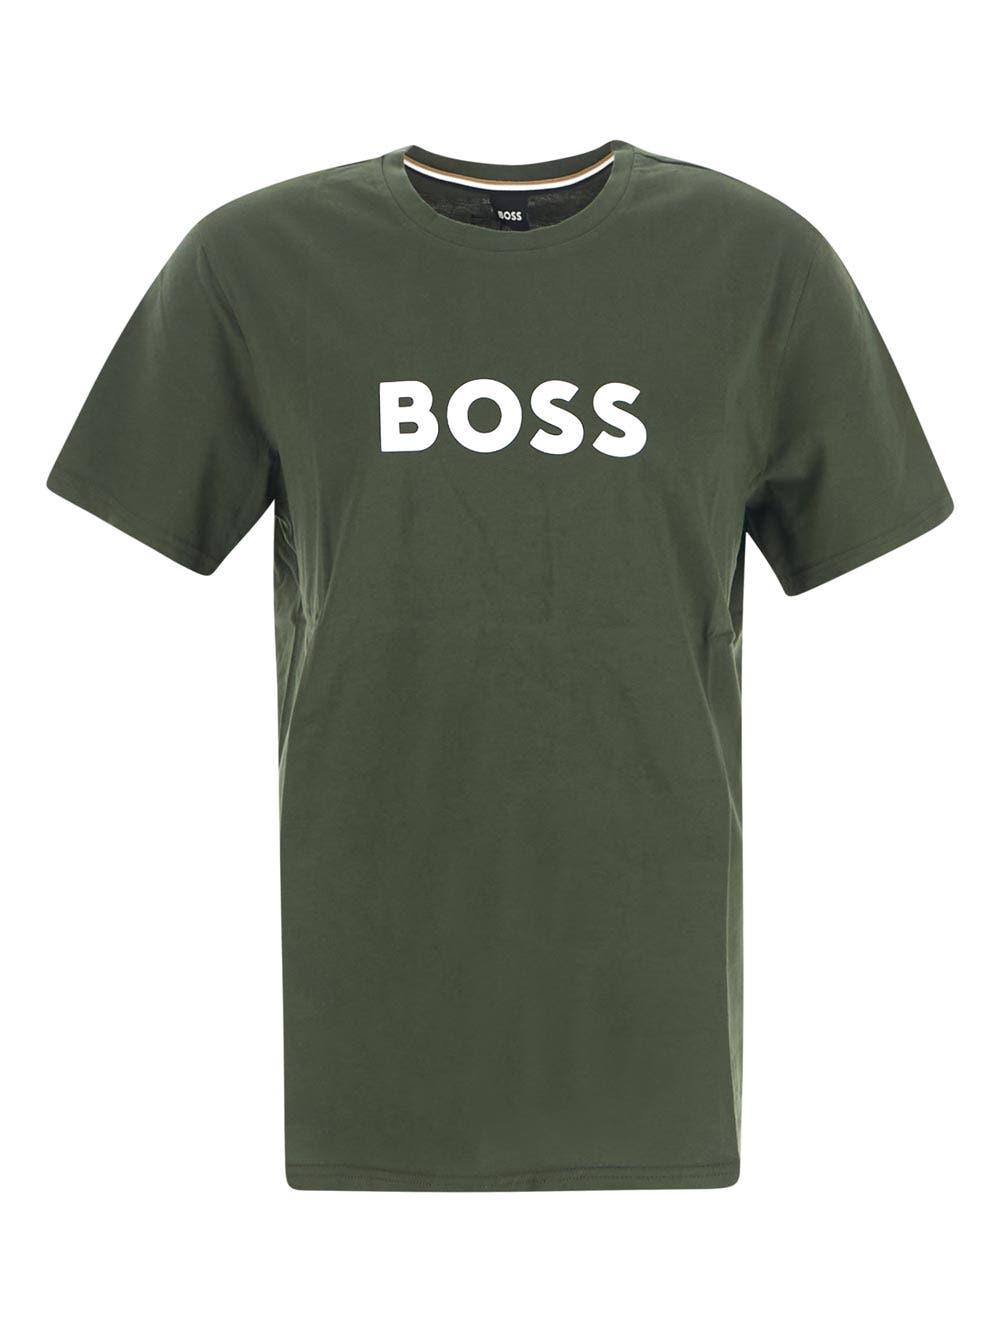 BOSS by HUGO BOSS Uv Sun Protection Logo T-shirt in Green for Men | Lyst